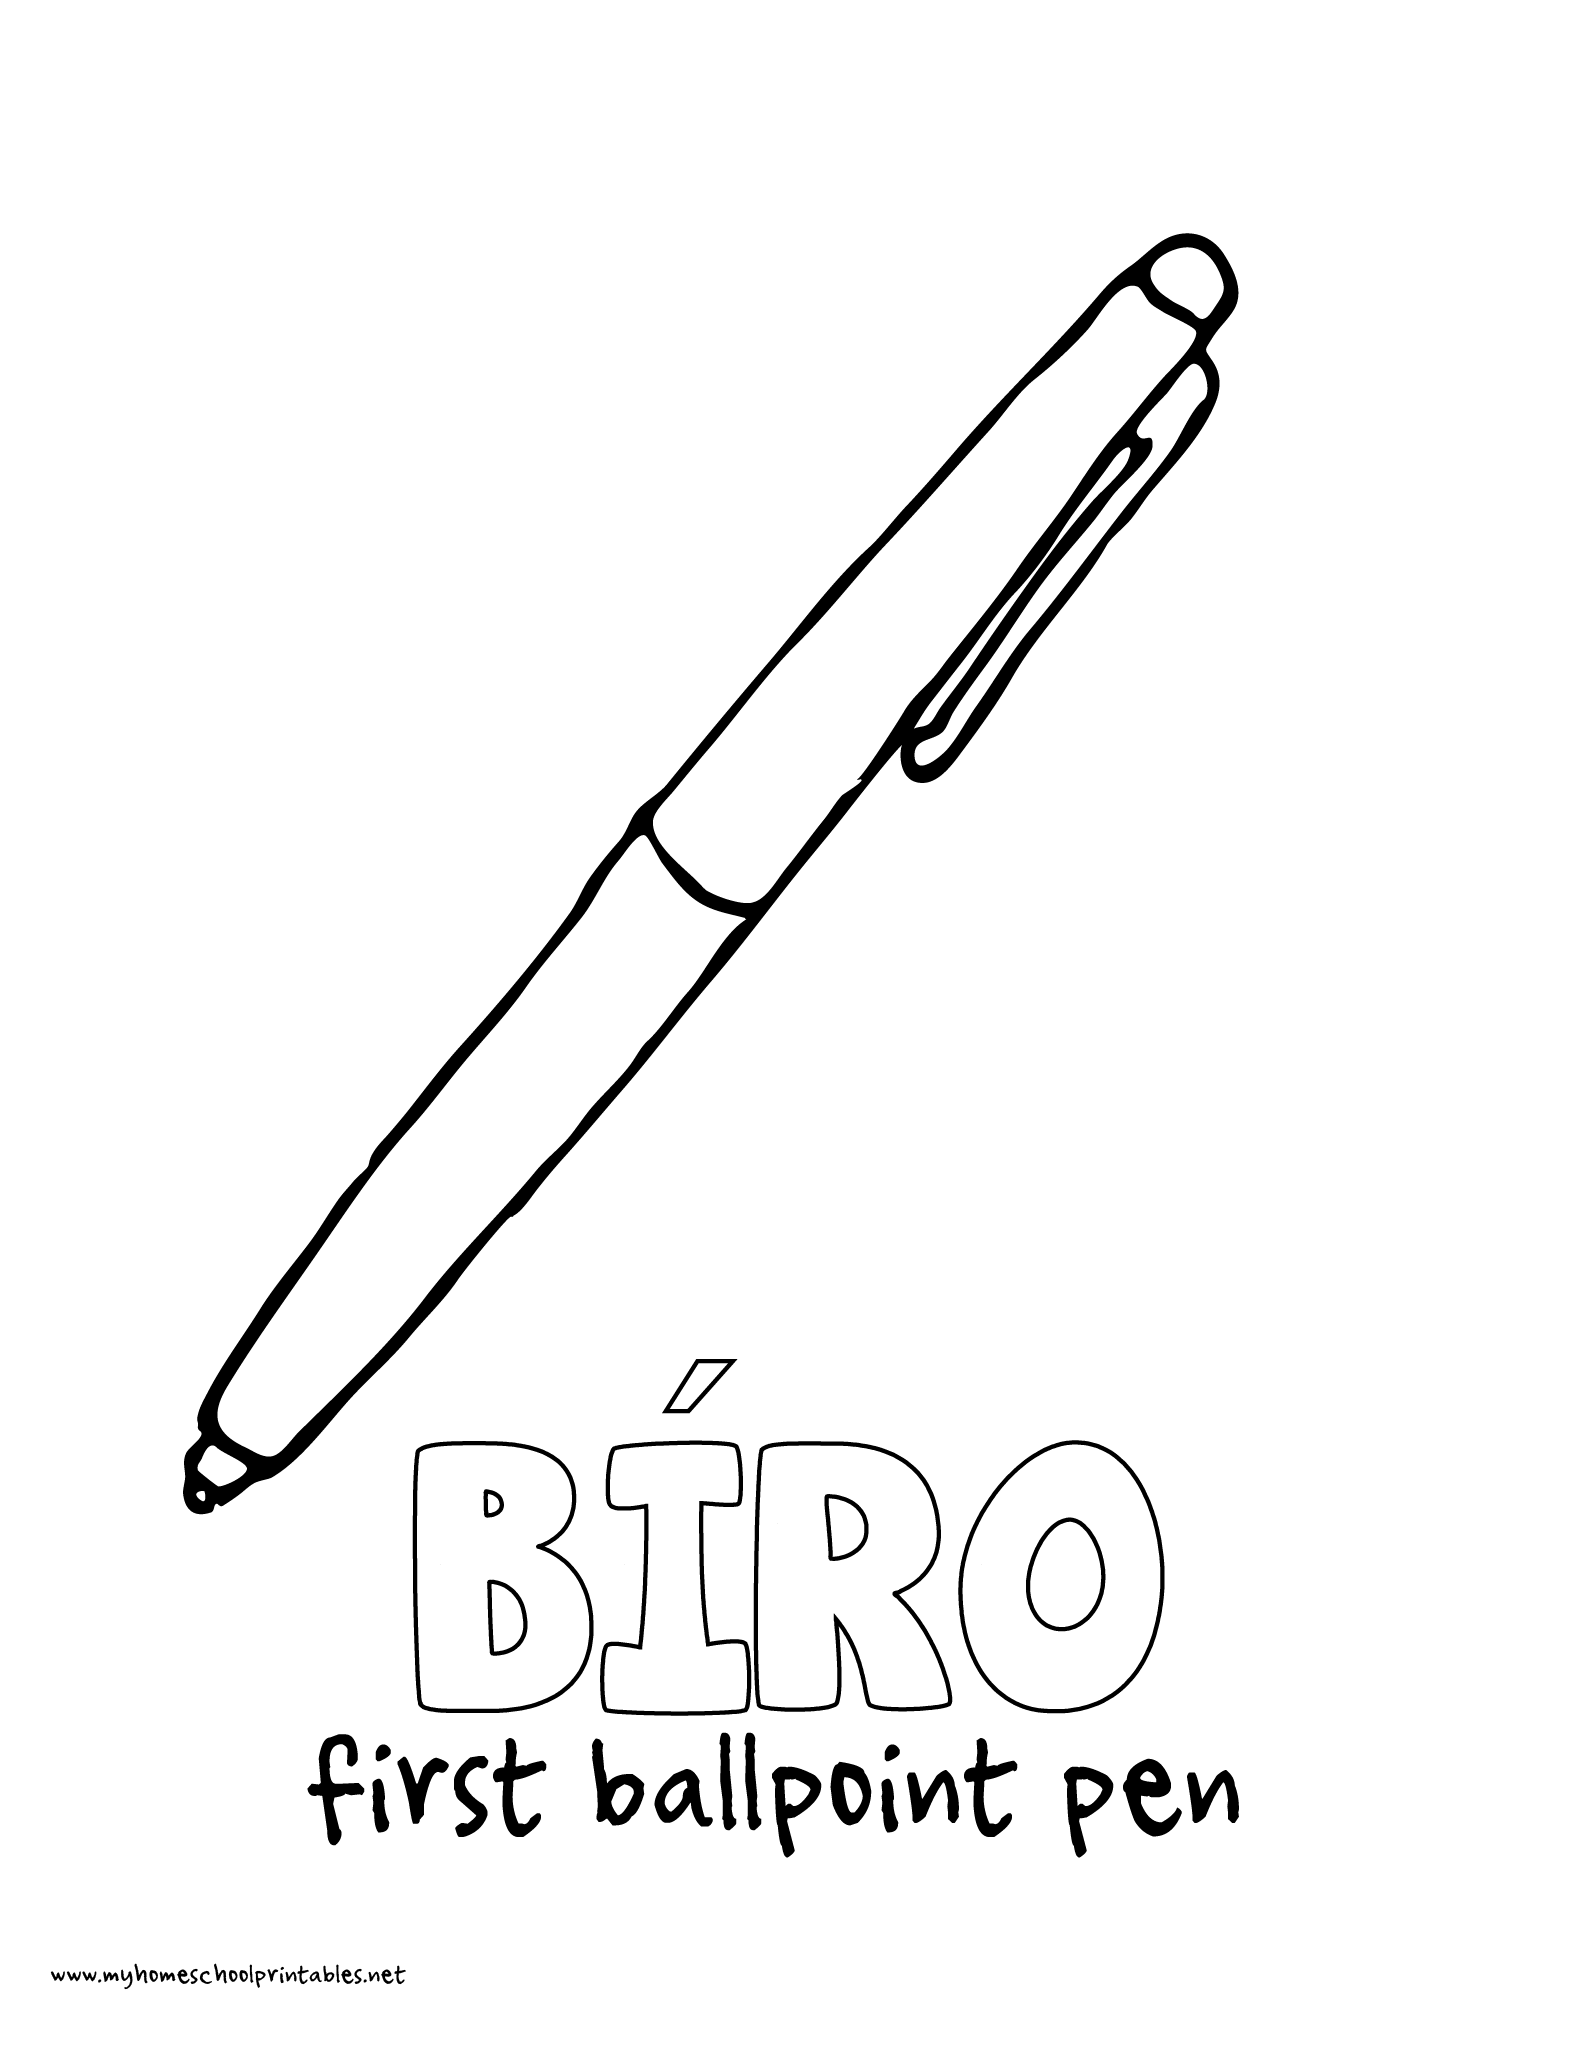 Ручка распечатать картинку. Ручка раскраска. Ручка раскраска для детей. Ручка шариковая раскраска для детей. Ручка ручки раскраска.